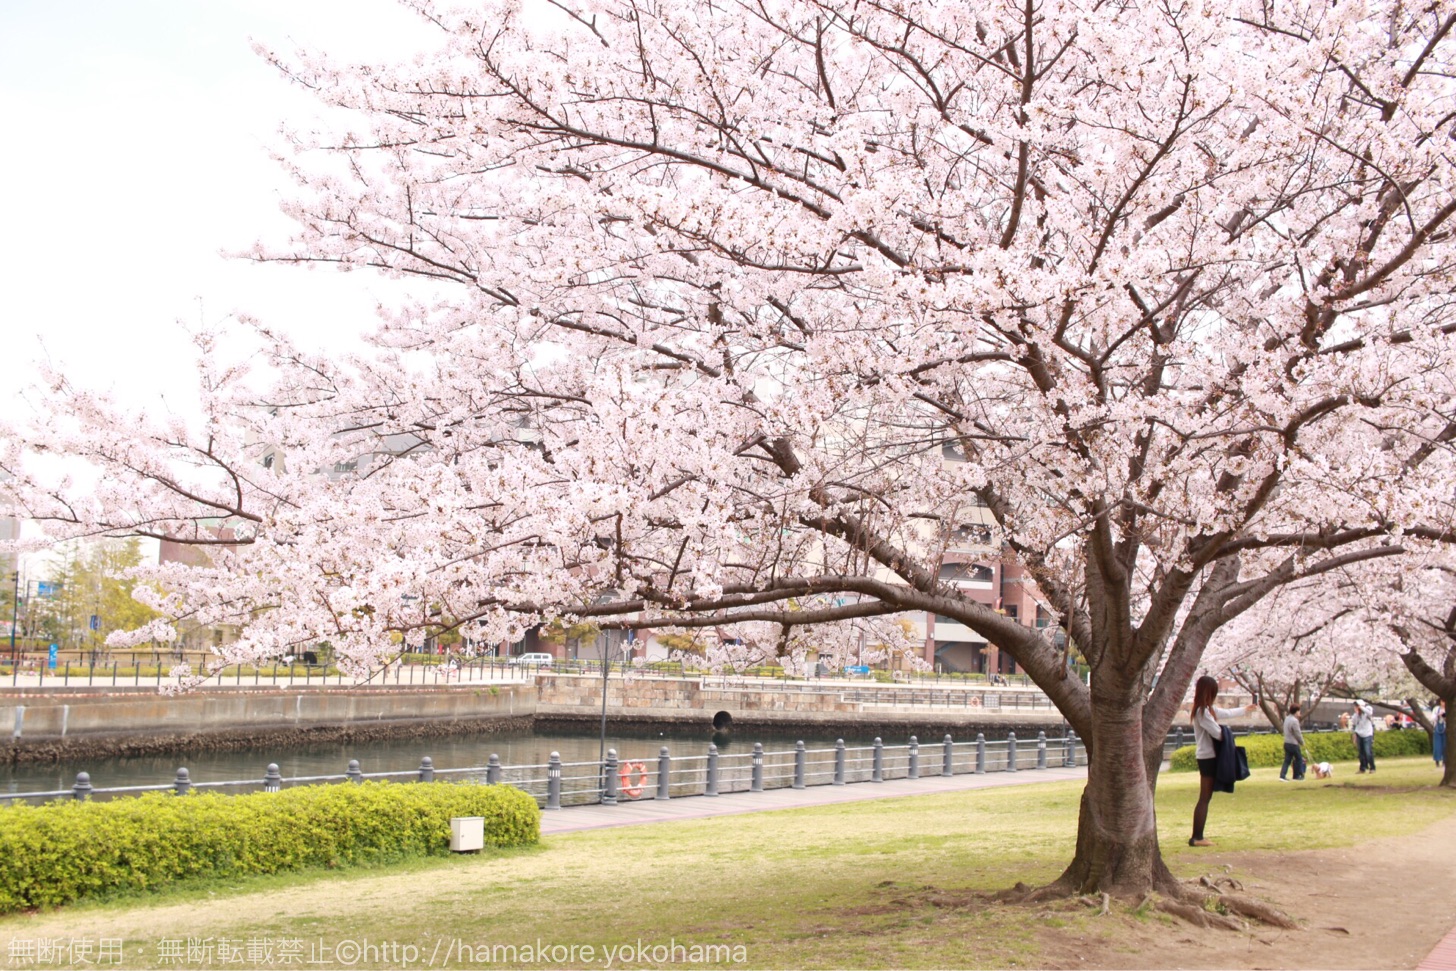 横浜ワールドポーターズへと続く桜並木道